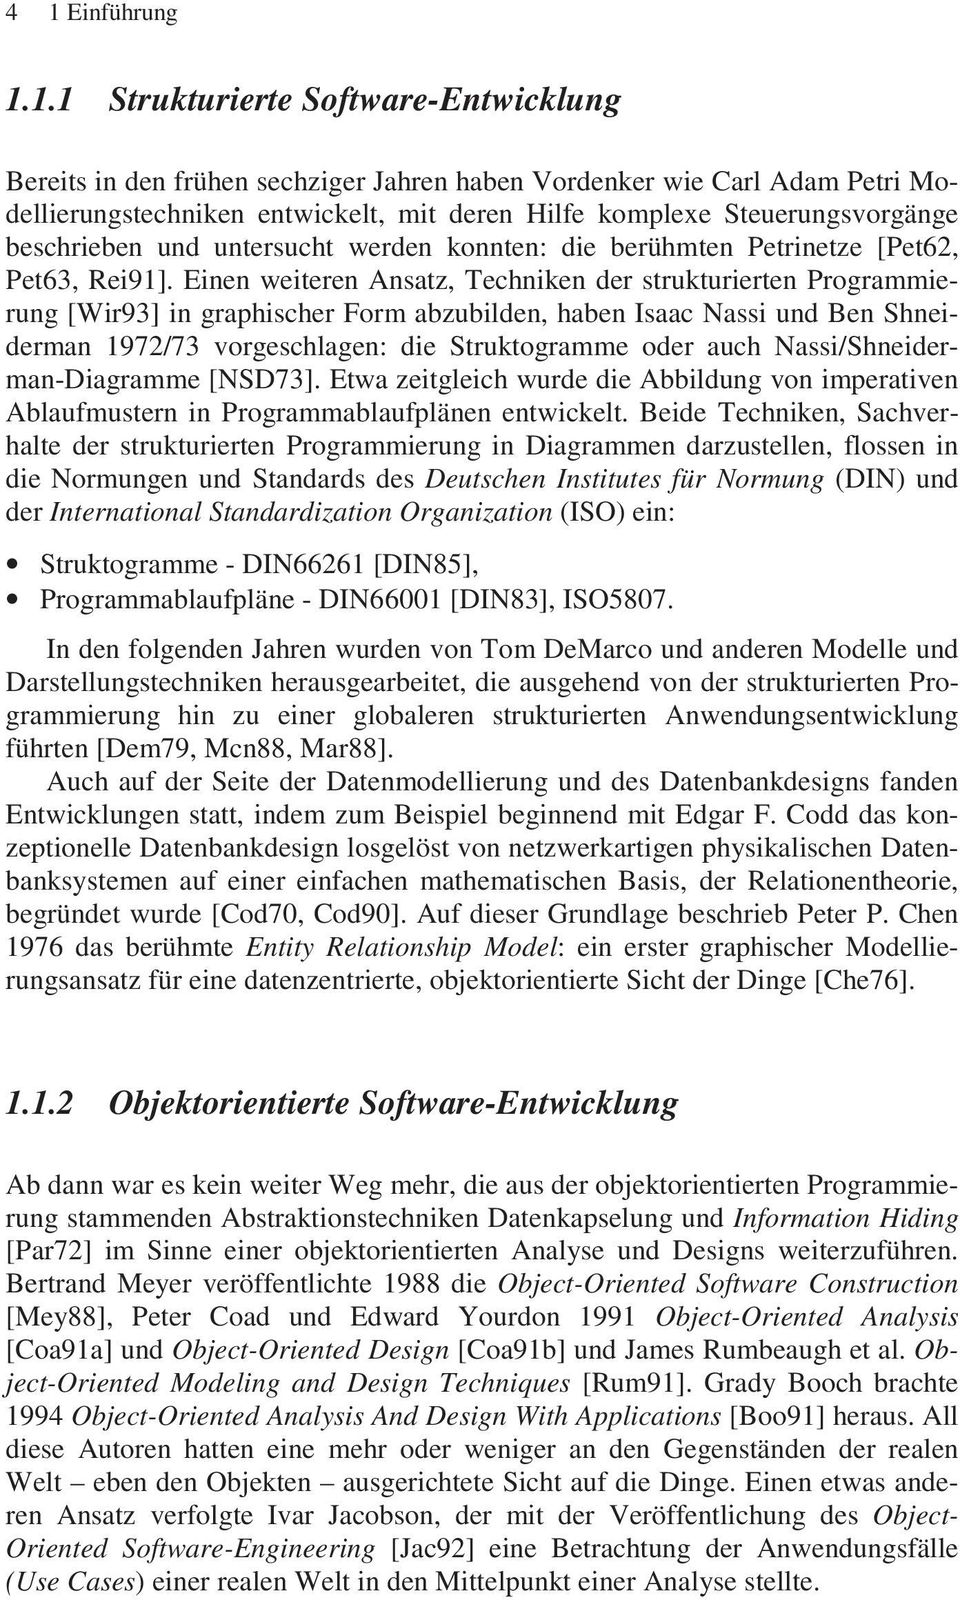 Einen weiteren Ansatz, Techniken der strukturierten Programmierung [Wir93] in graphischer Form abzubilden, haben Isaac Nassi und Ben Shneiderman 1972/73 vorgeschlagen: die Struktogramme oder auch